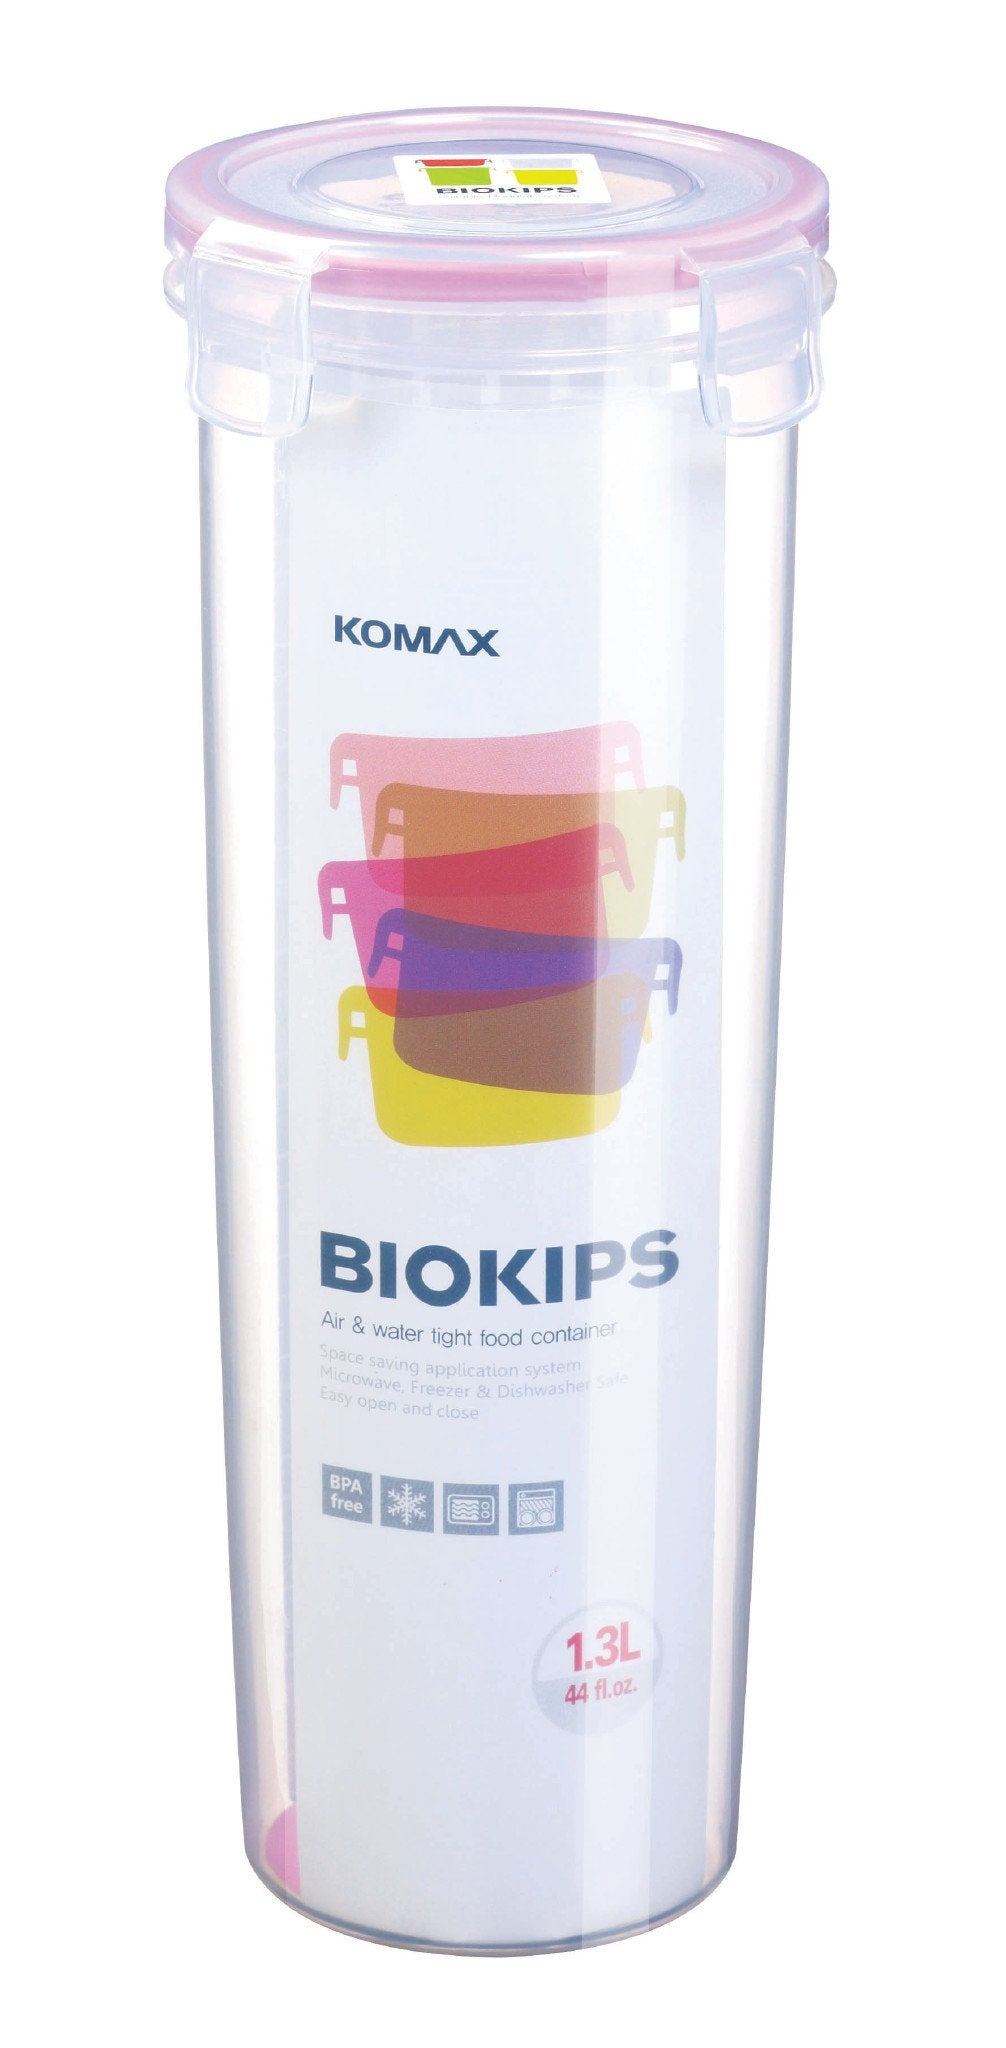 Komax Biokips Round Food Storage Container, 1.3 L